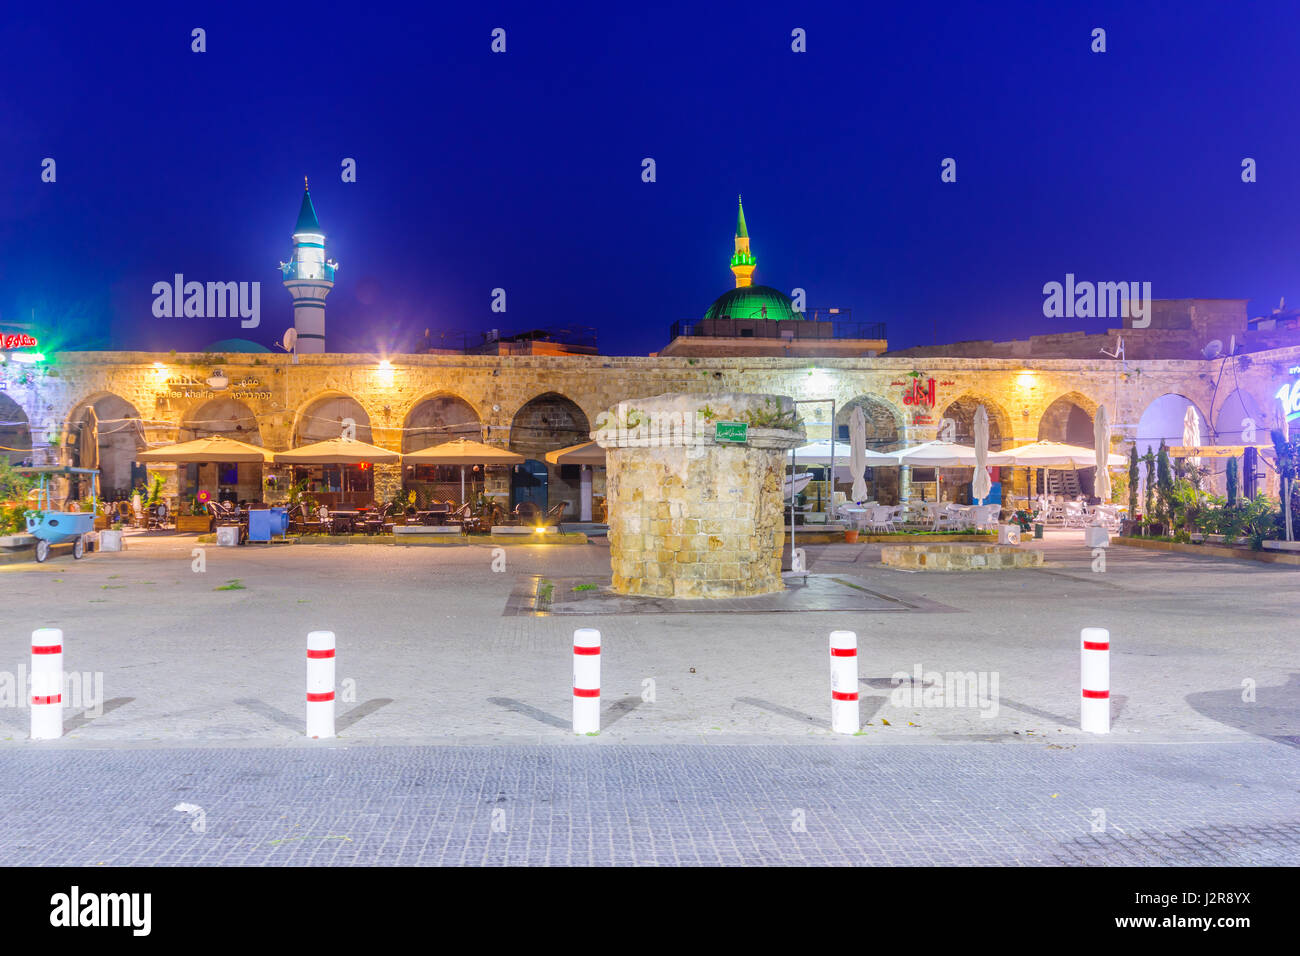 ACRE, ISRAËL - 27 avril 2017 : nuit à Khan a-Shawarda, dans la vieille ville d'Acre (Akko), en Israël. C'est un vieux commerçants Inn, qui sert aujourd'hui comme un b Banque D'Images